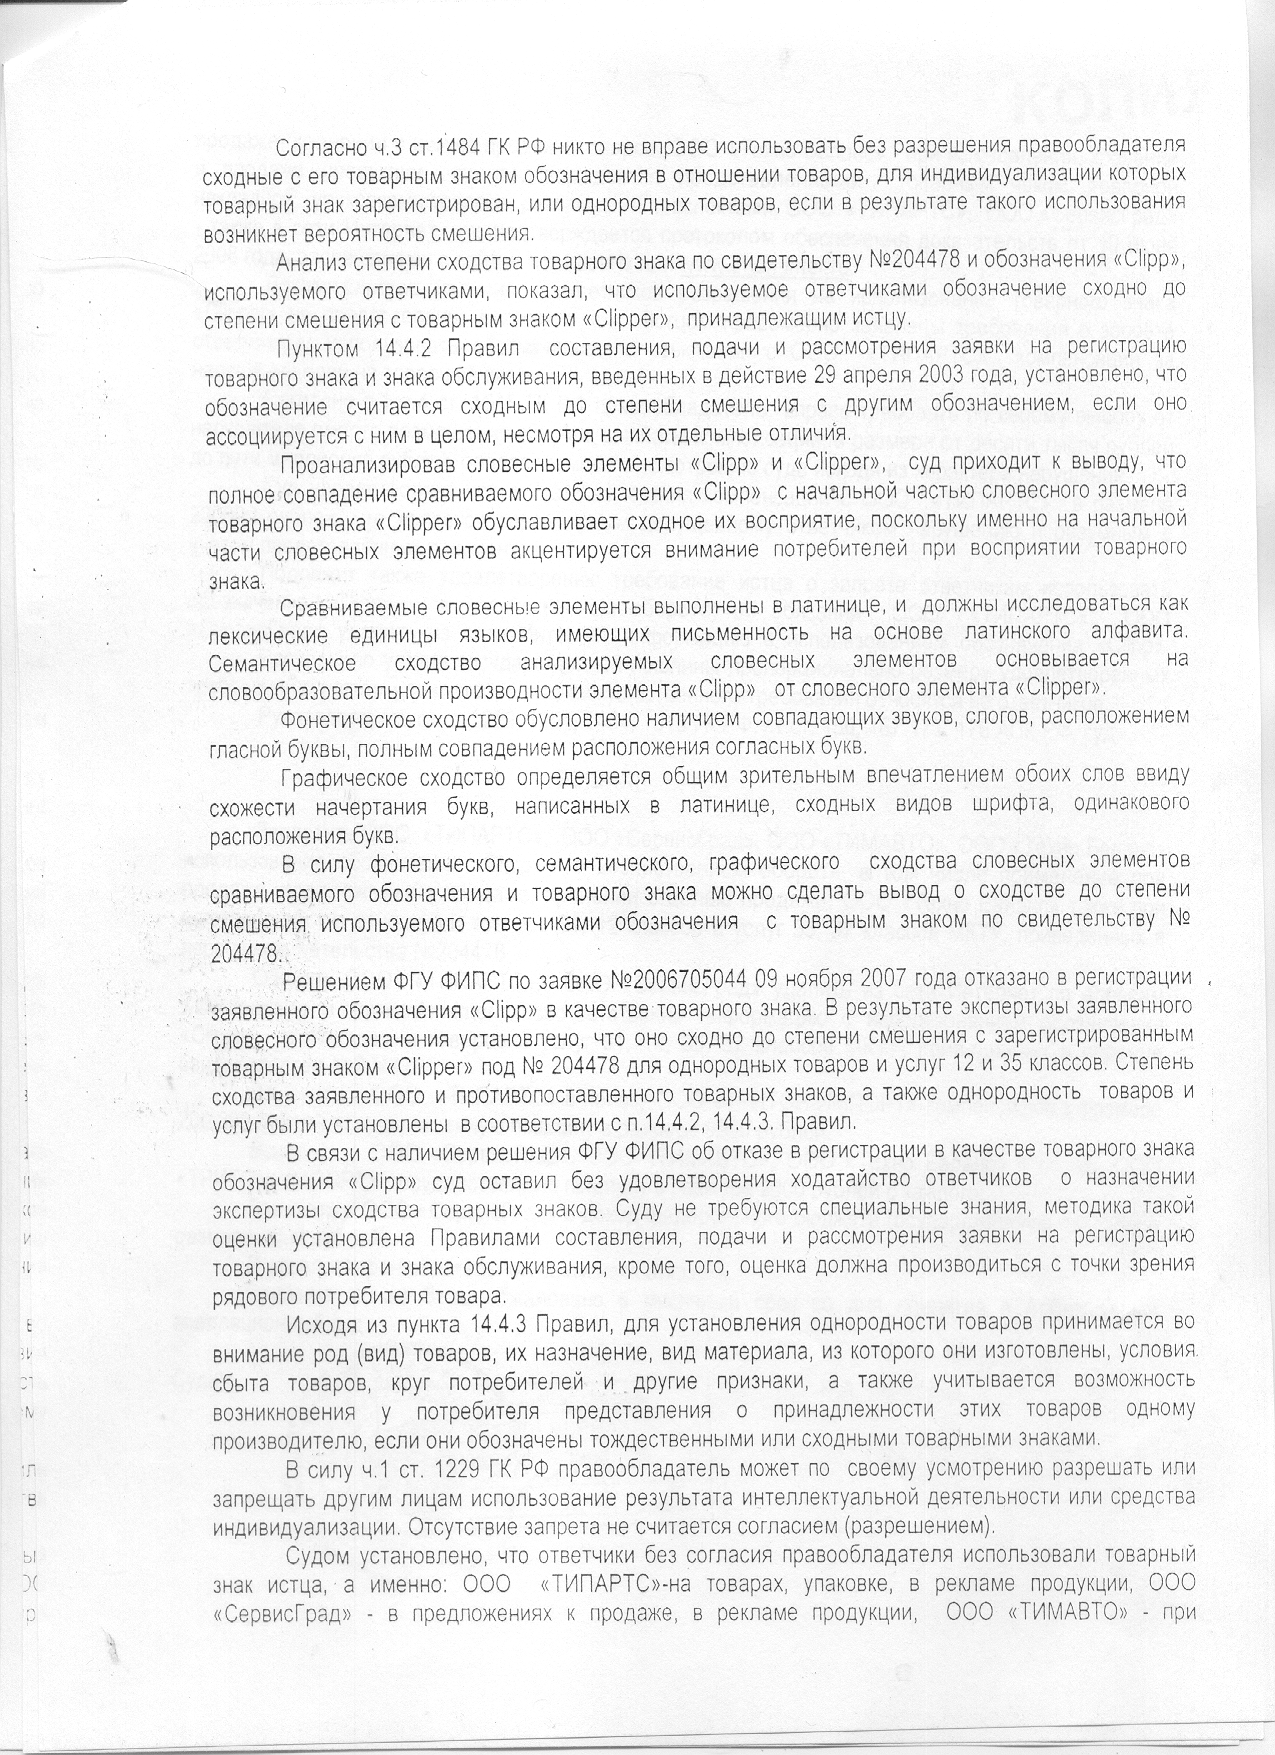 Решение Арбитражного суда Москвы по делу о нарушении прав на товарный знак Clipper. Страница 2